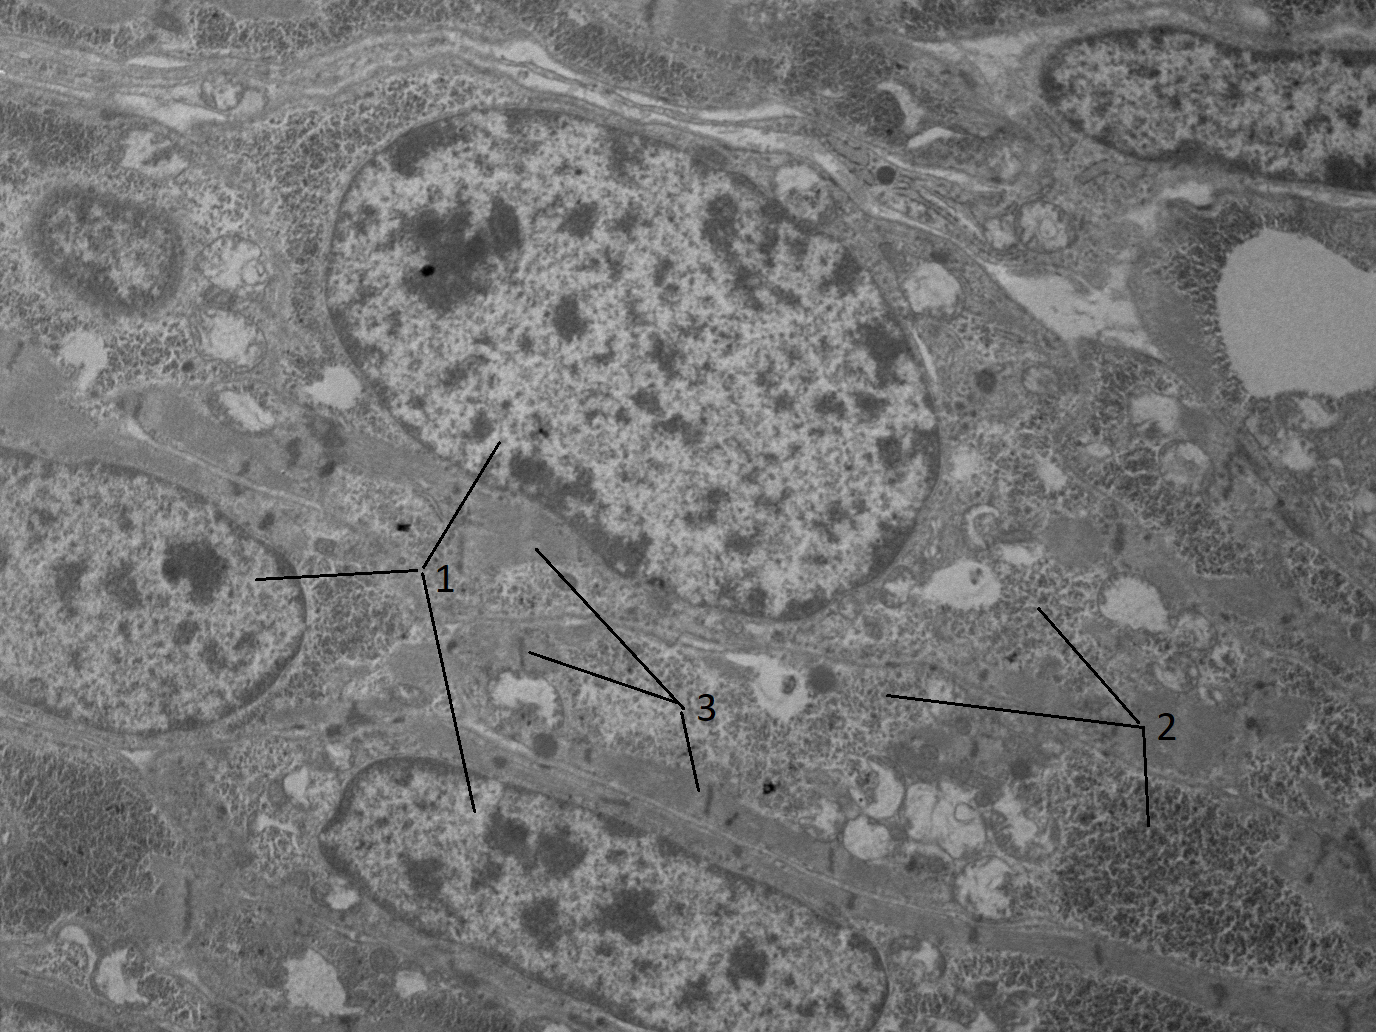 Продолжающие процессы цито дифференцировки в кардиомиоцитах куриного эмбриона:1 - активный деспирализованный хроматин; 2 - группы полисом; 3 - формирующиеся миофибриллы